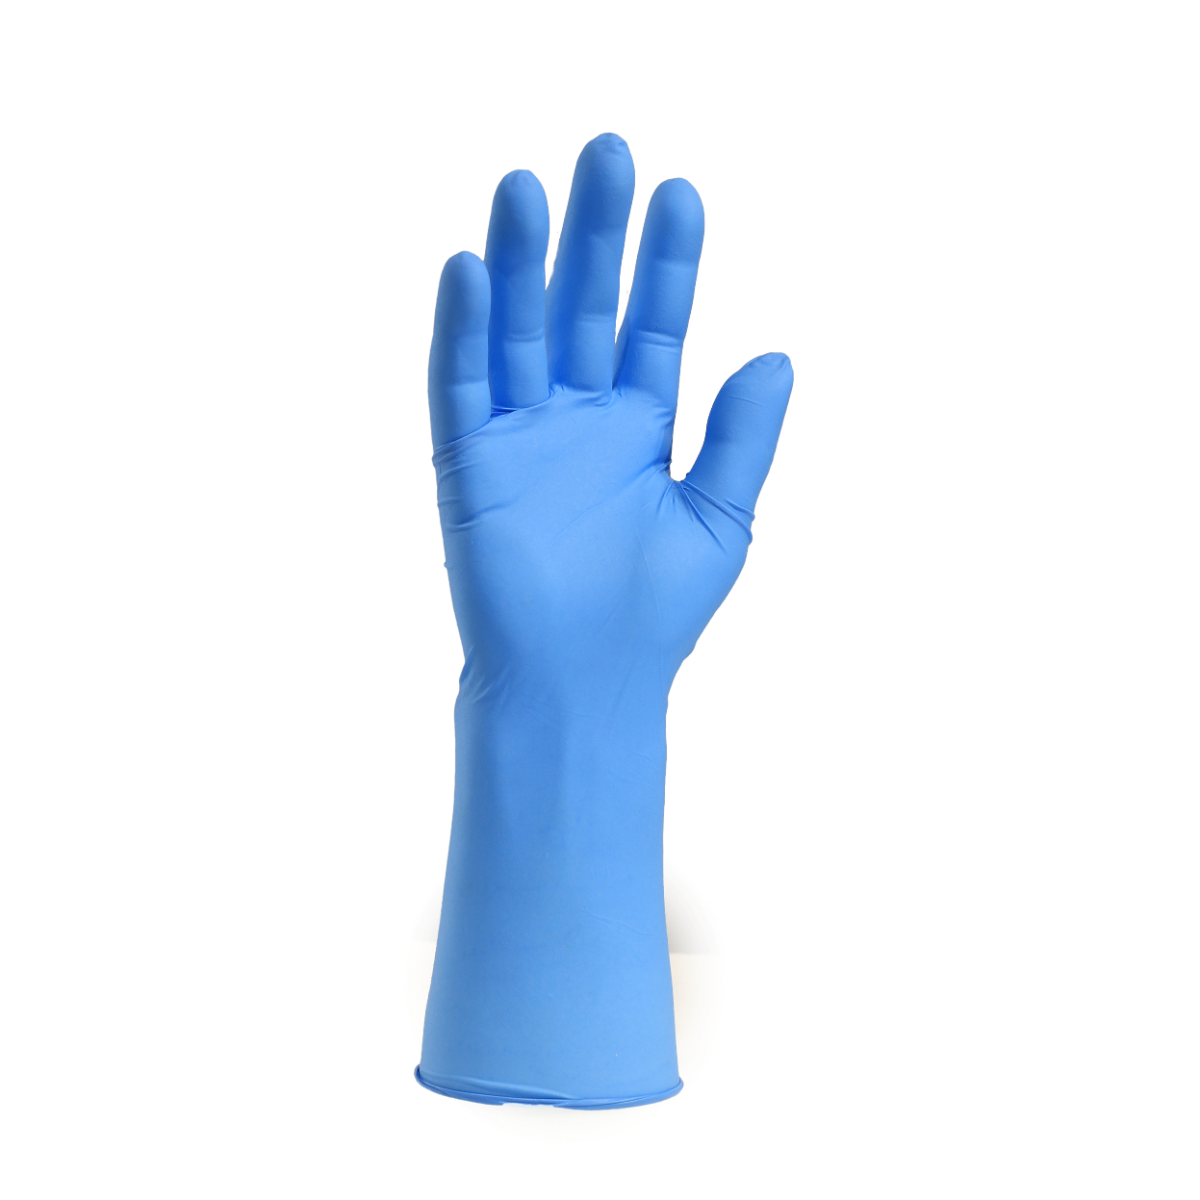 Arma Tuflex Long Cuff Nitrile Powderfree Gloves - Blue